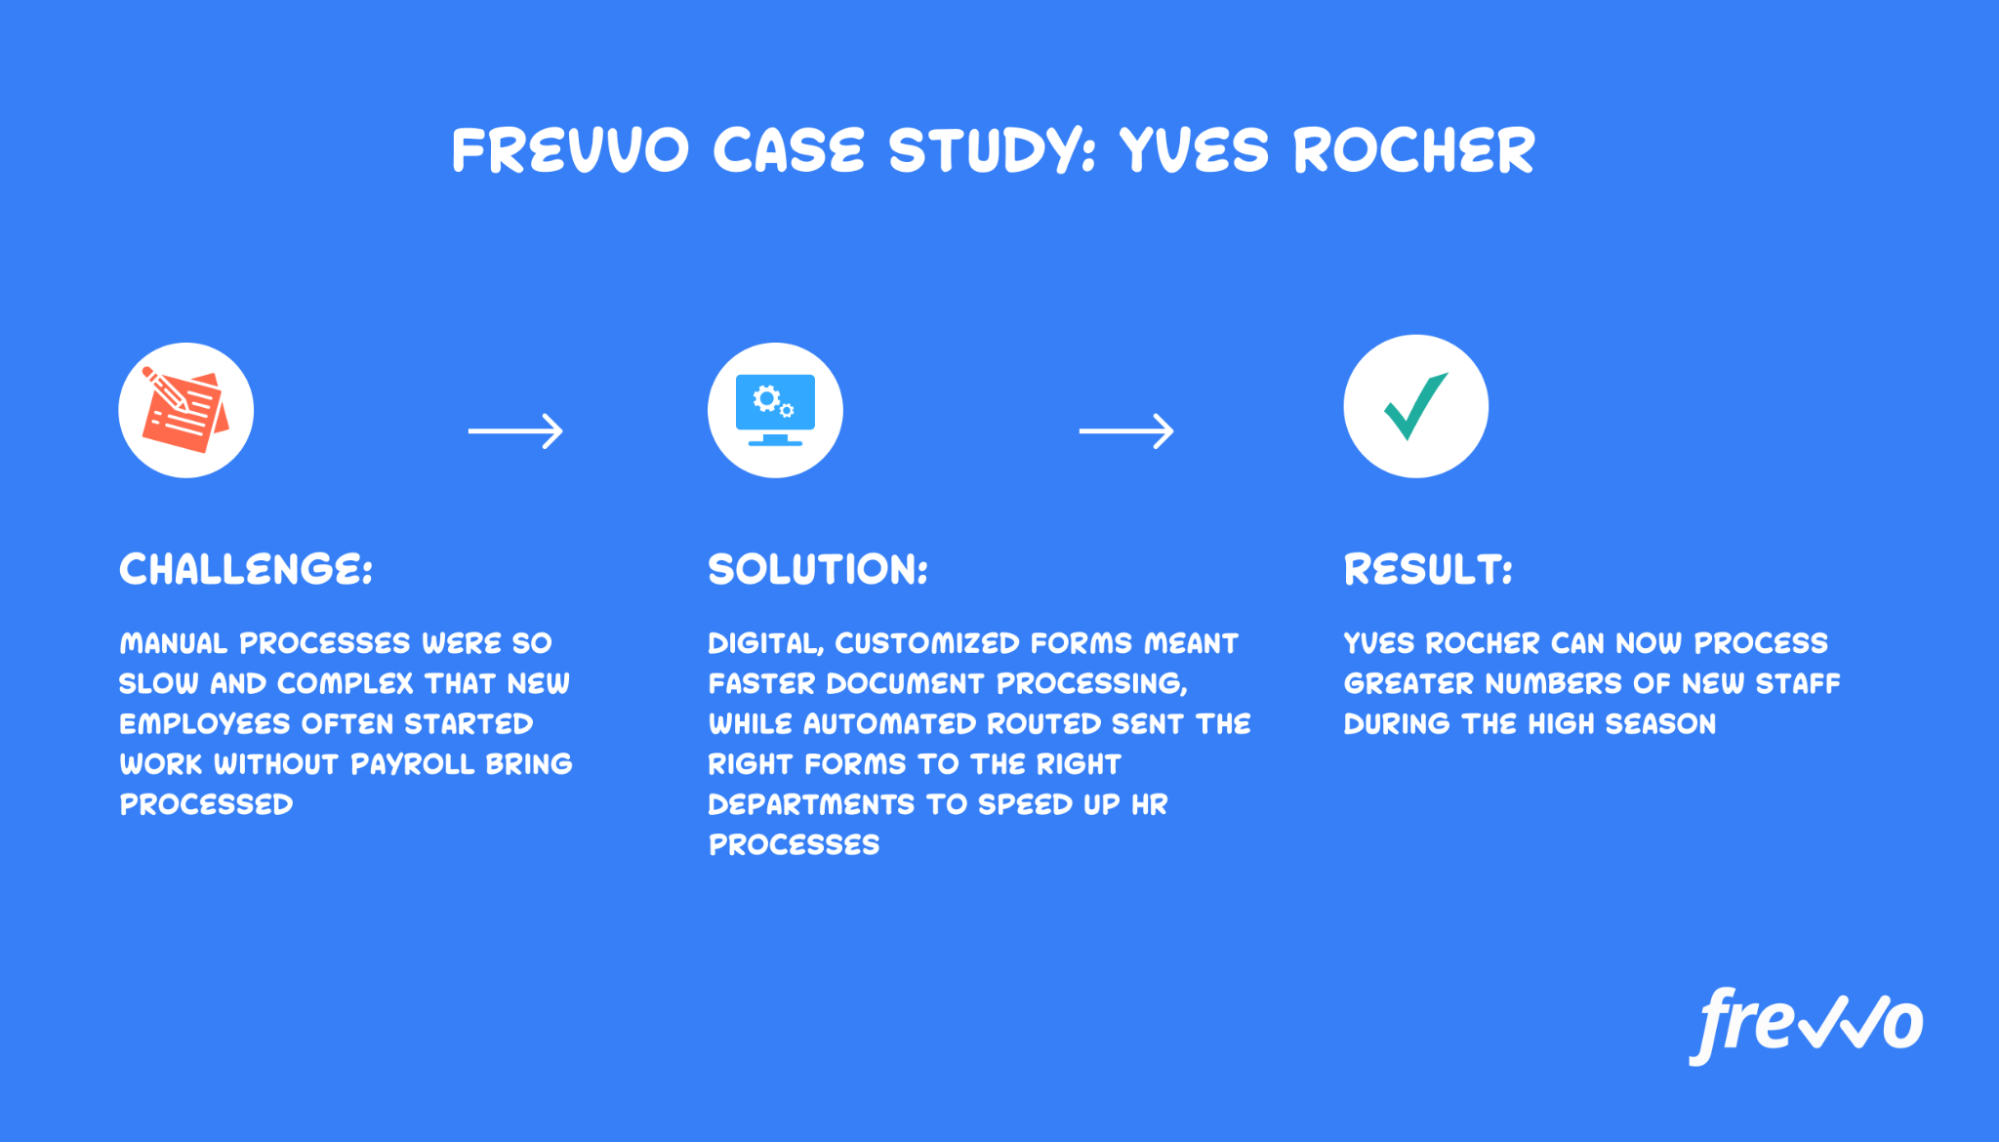 Case study of Yves Rocher using Frevvo